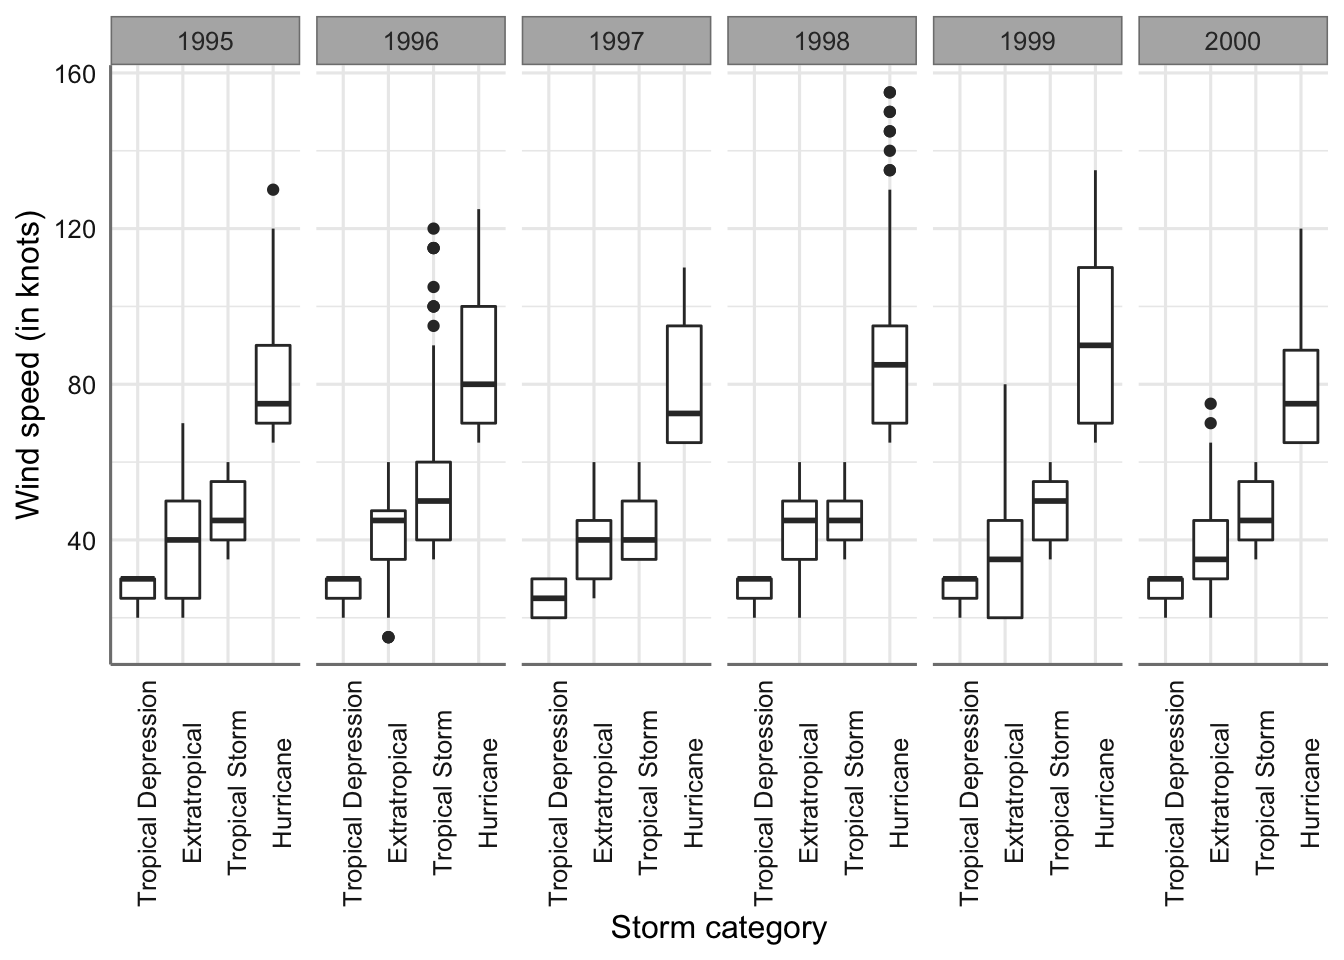 Gráfico de cajas de la velocidad del viento para cada tipo de tormenta y año.